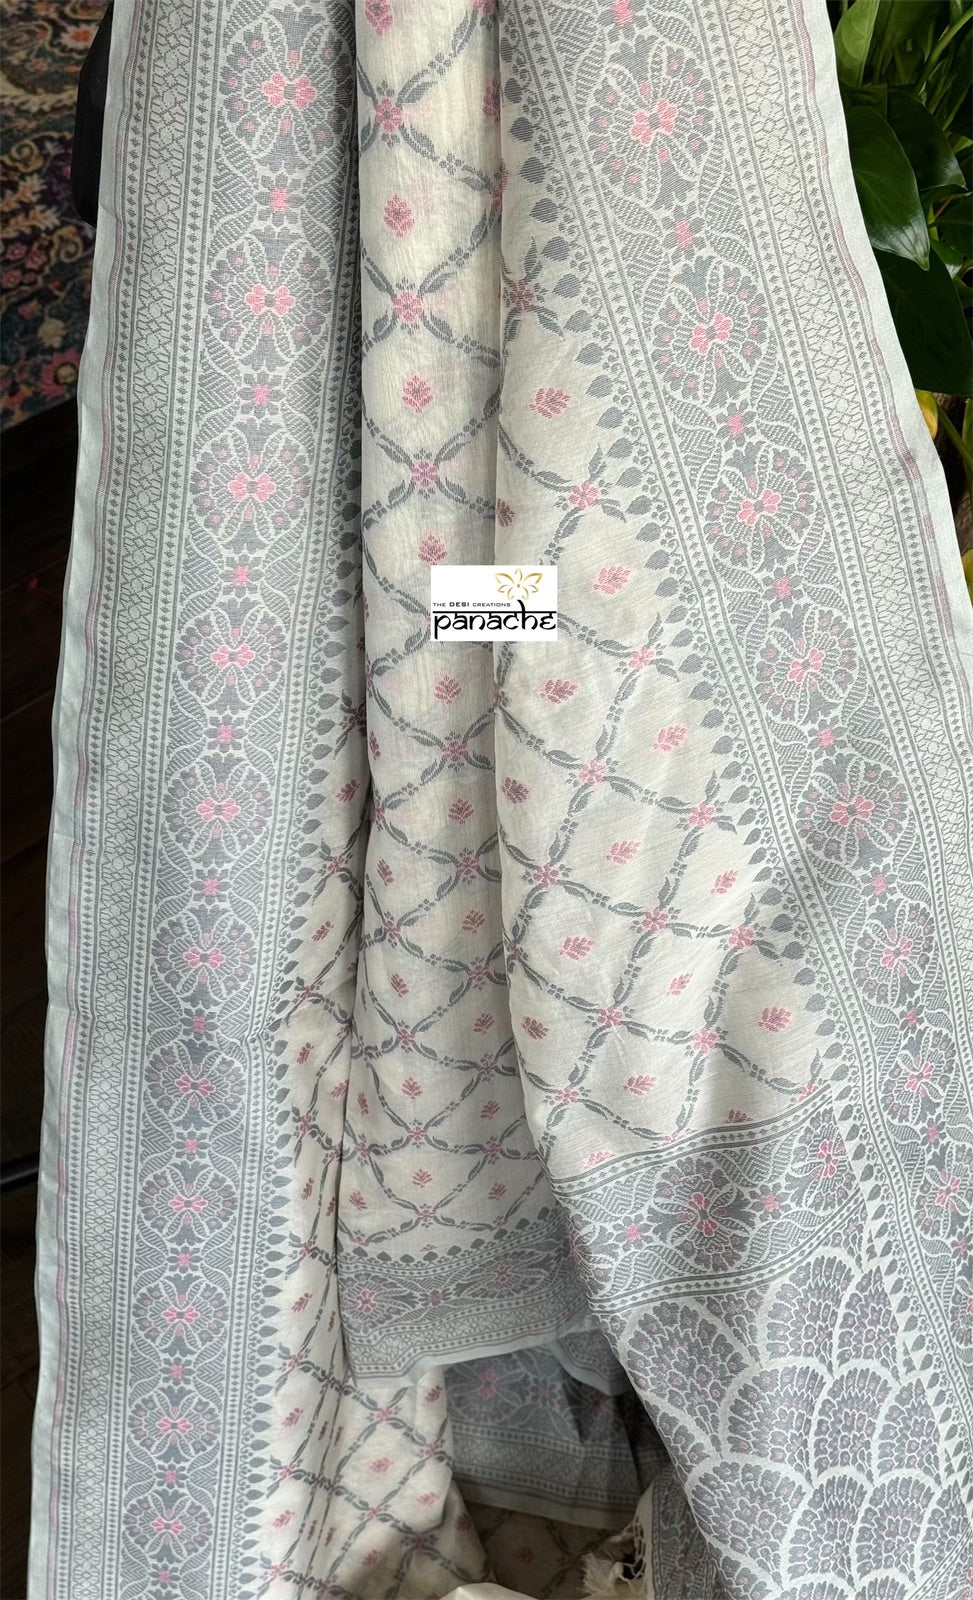 Kora Cotton Banarasi - Off White Grey Pink